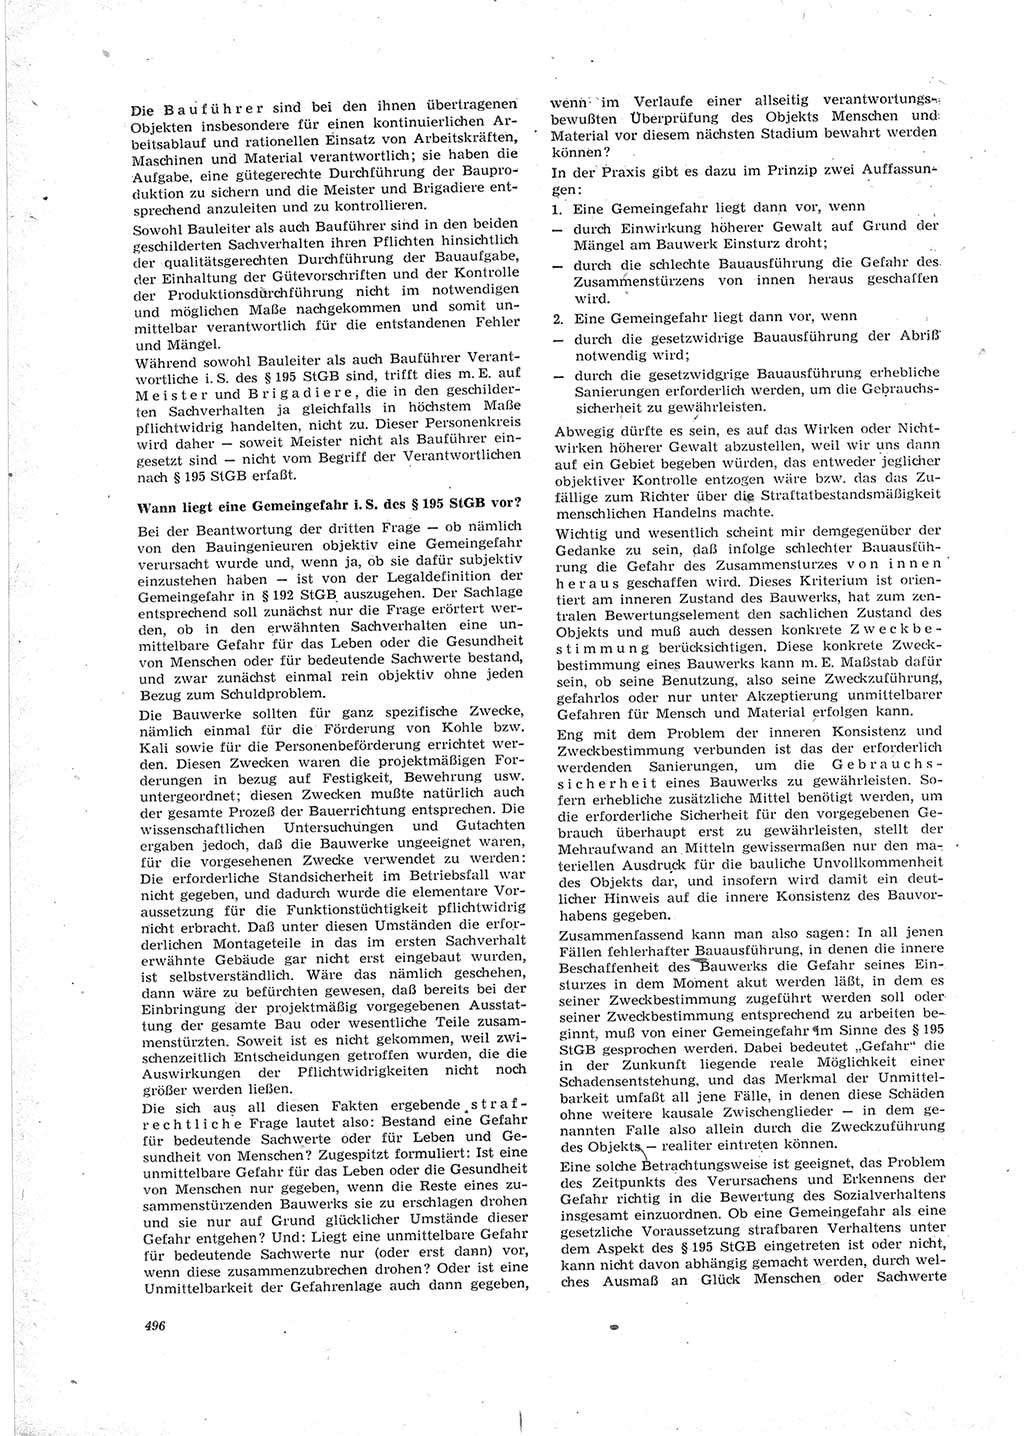 Neue Justiz (NJ), Zeitschrift für Recht und Rechtswissenschaft [Deutsche Demokratische Republik (DDR)], 23. Jahrgang 1969, Seite 496 (NJ DDR 1969, S. 496)